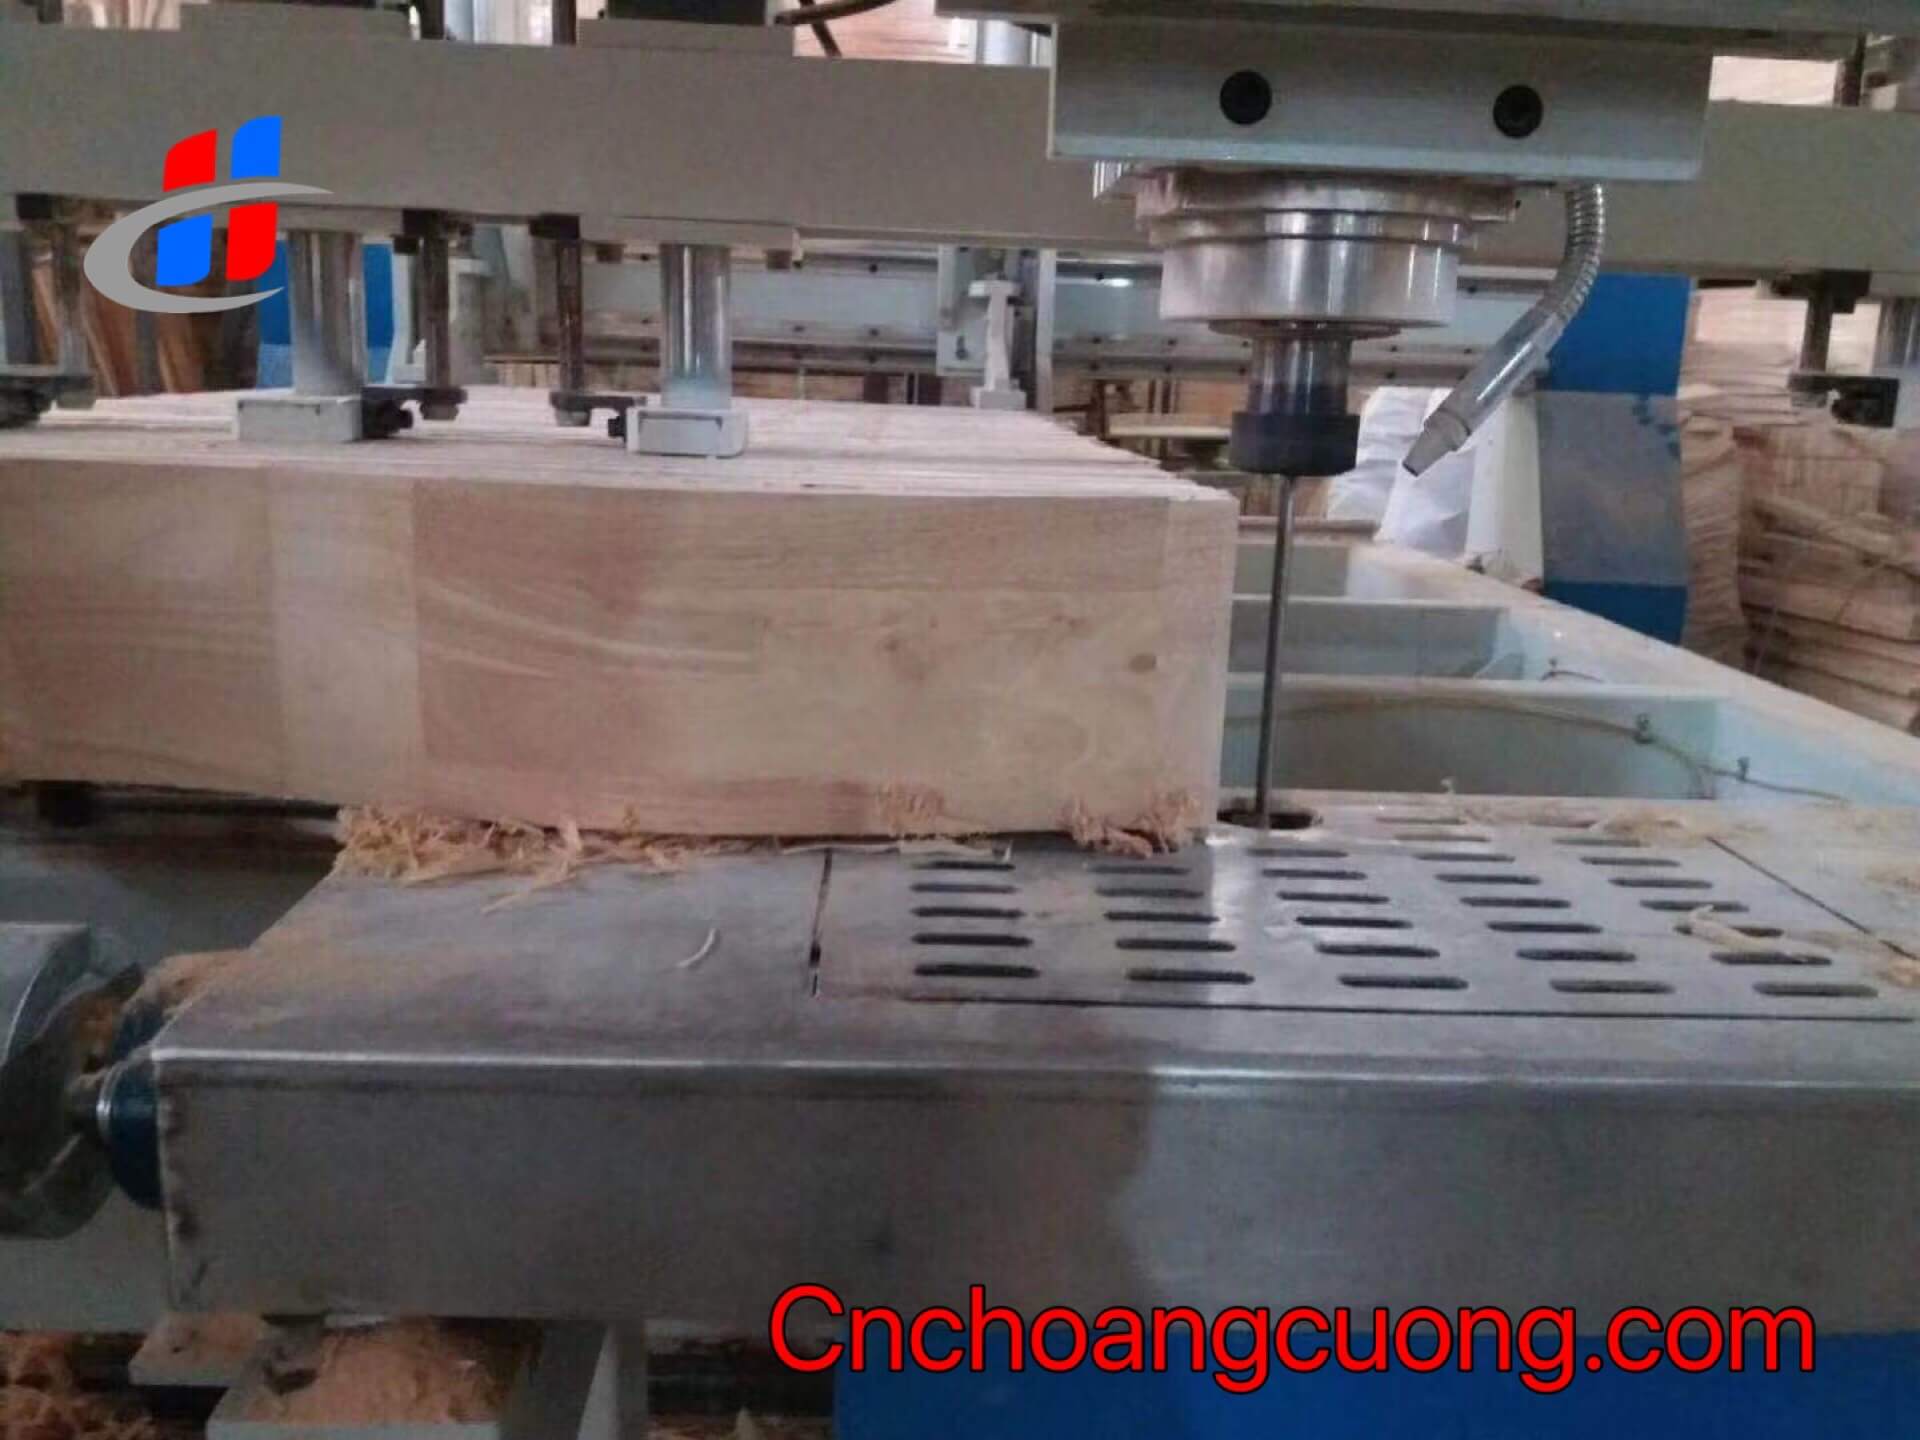 https://cnchoangcuong.com/product/may-cat-go-cnc-ts-klj-2015/